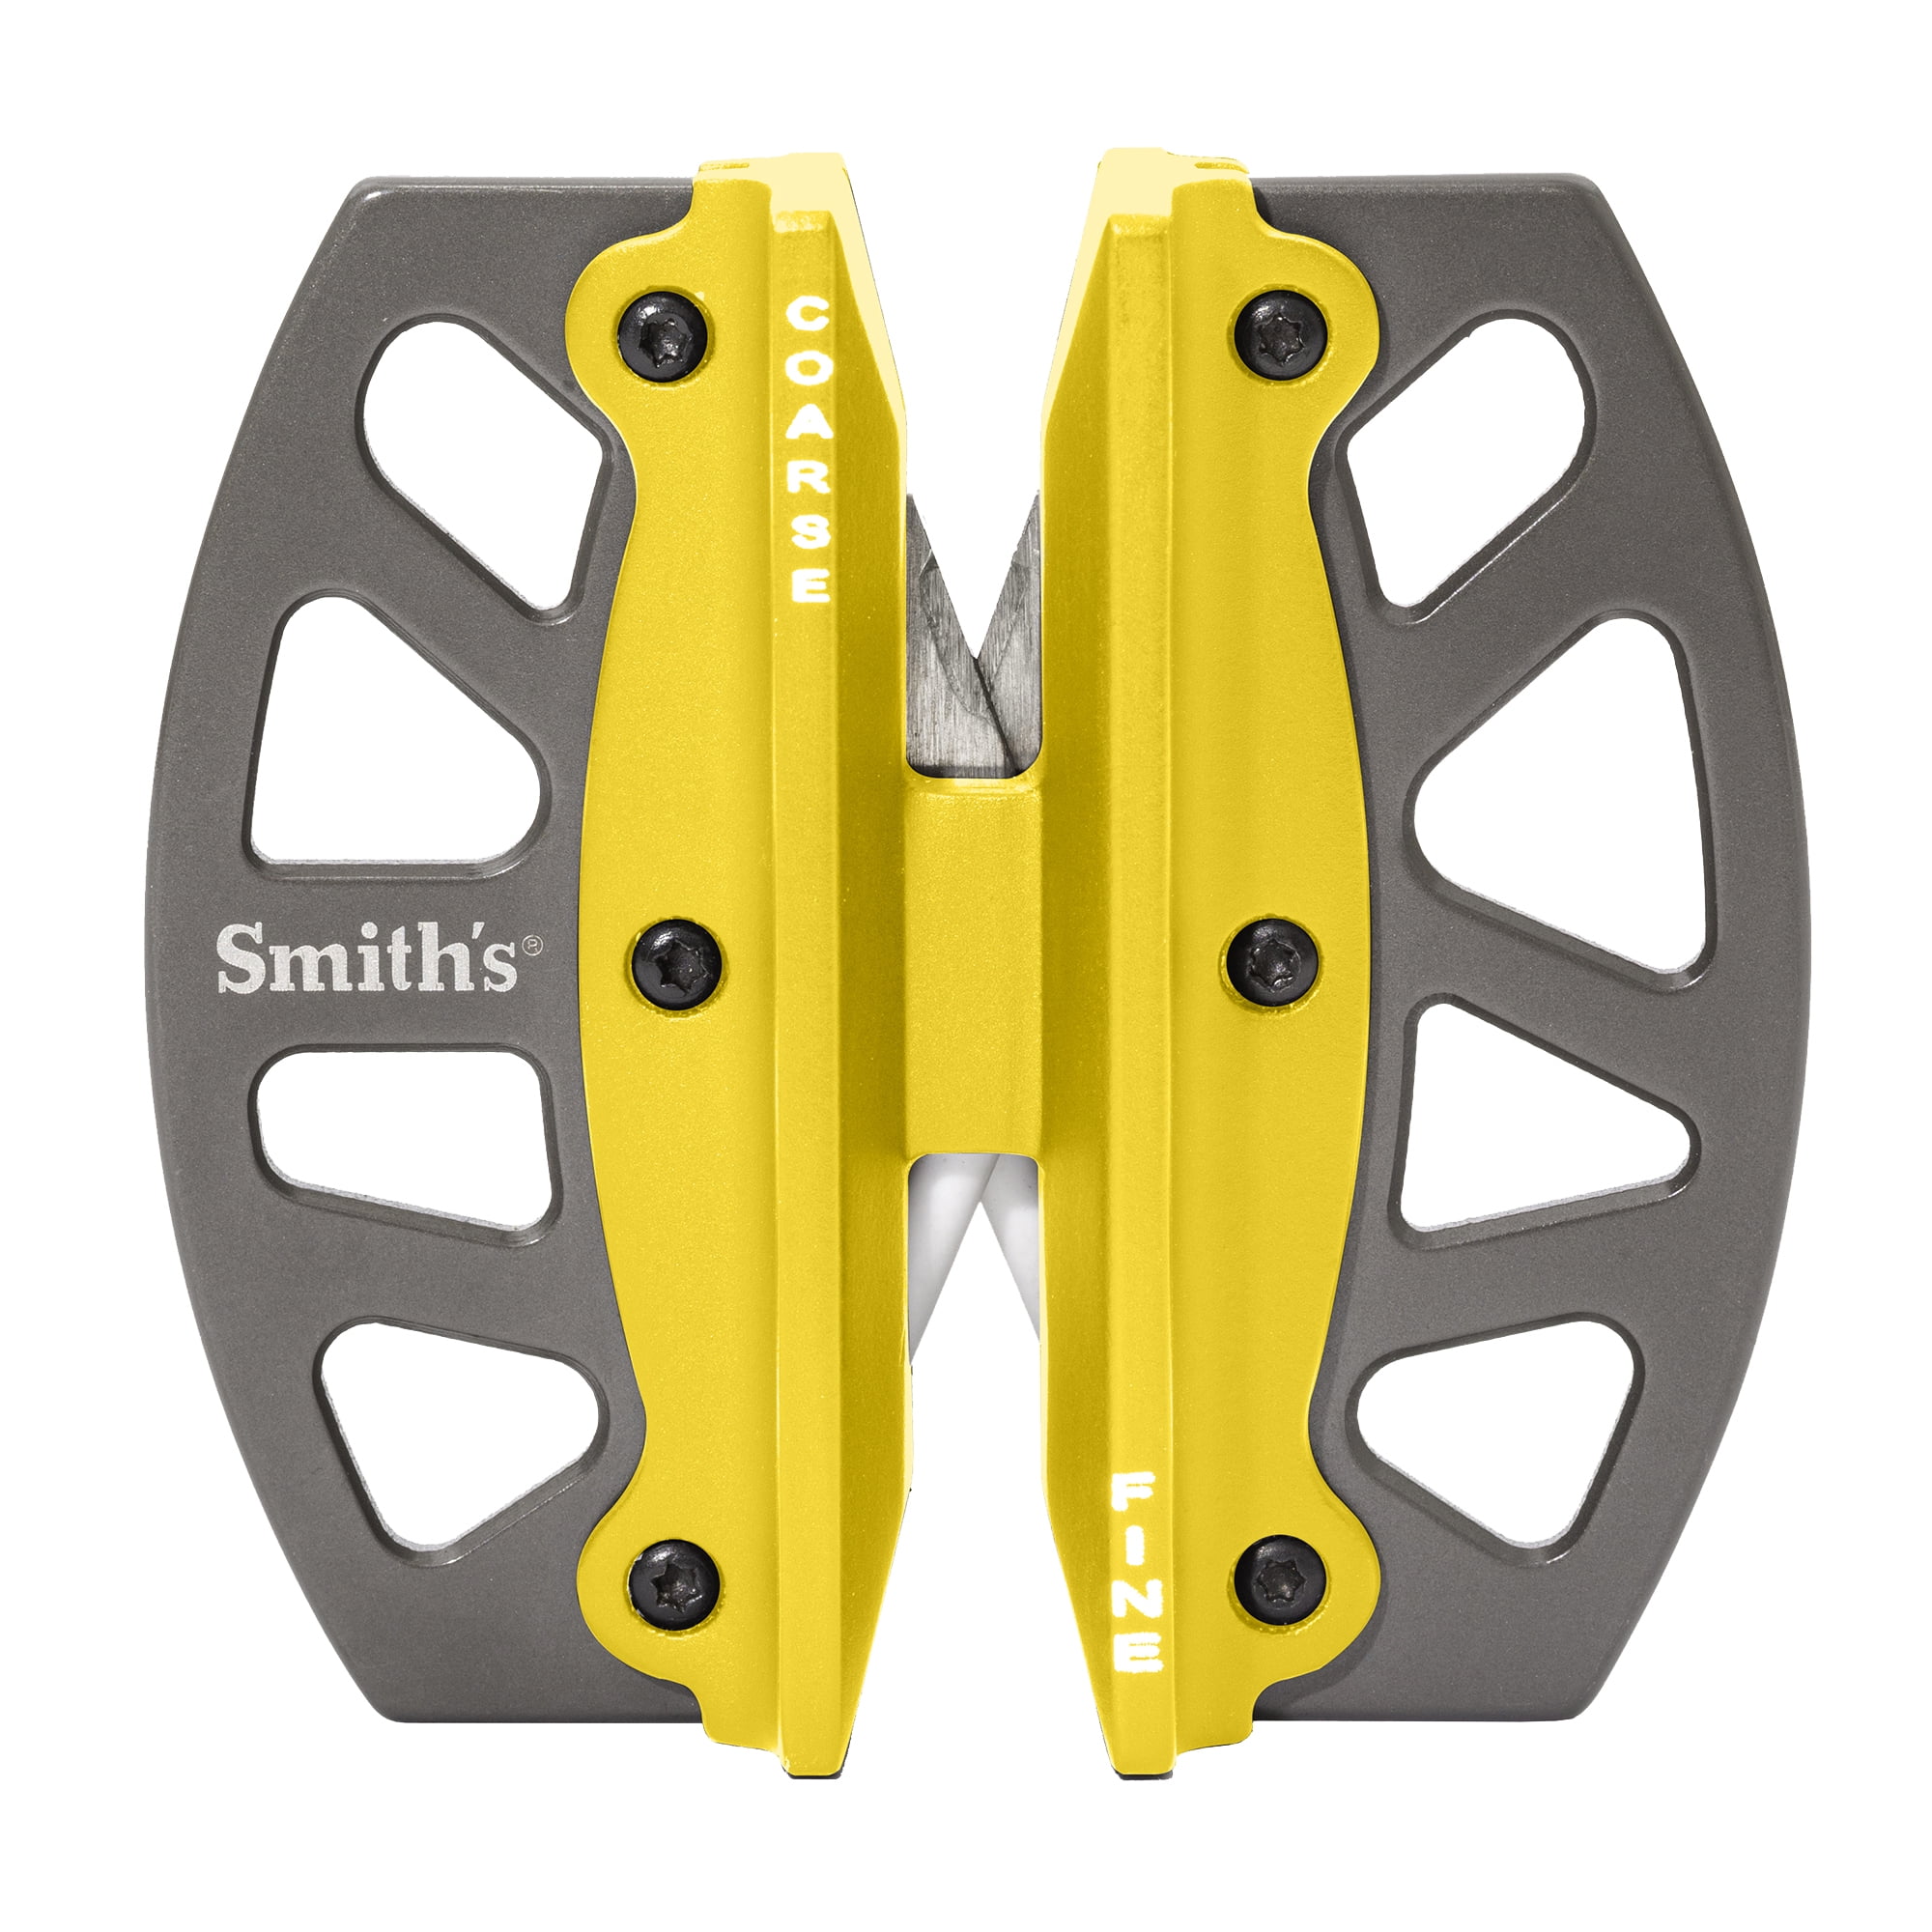 Smith's PP1 Pocket Pal Multifunction Sharpener for sale online 